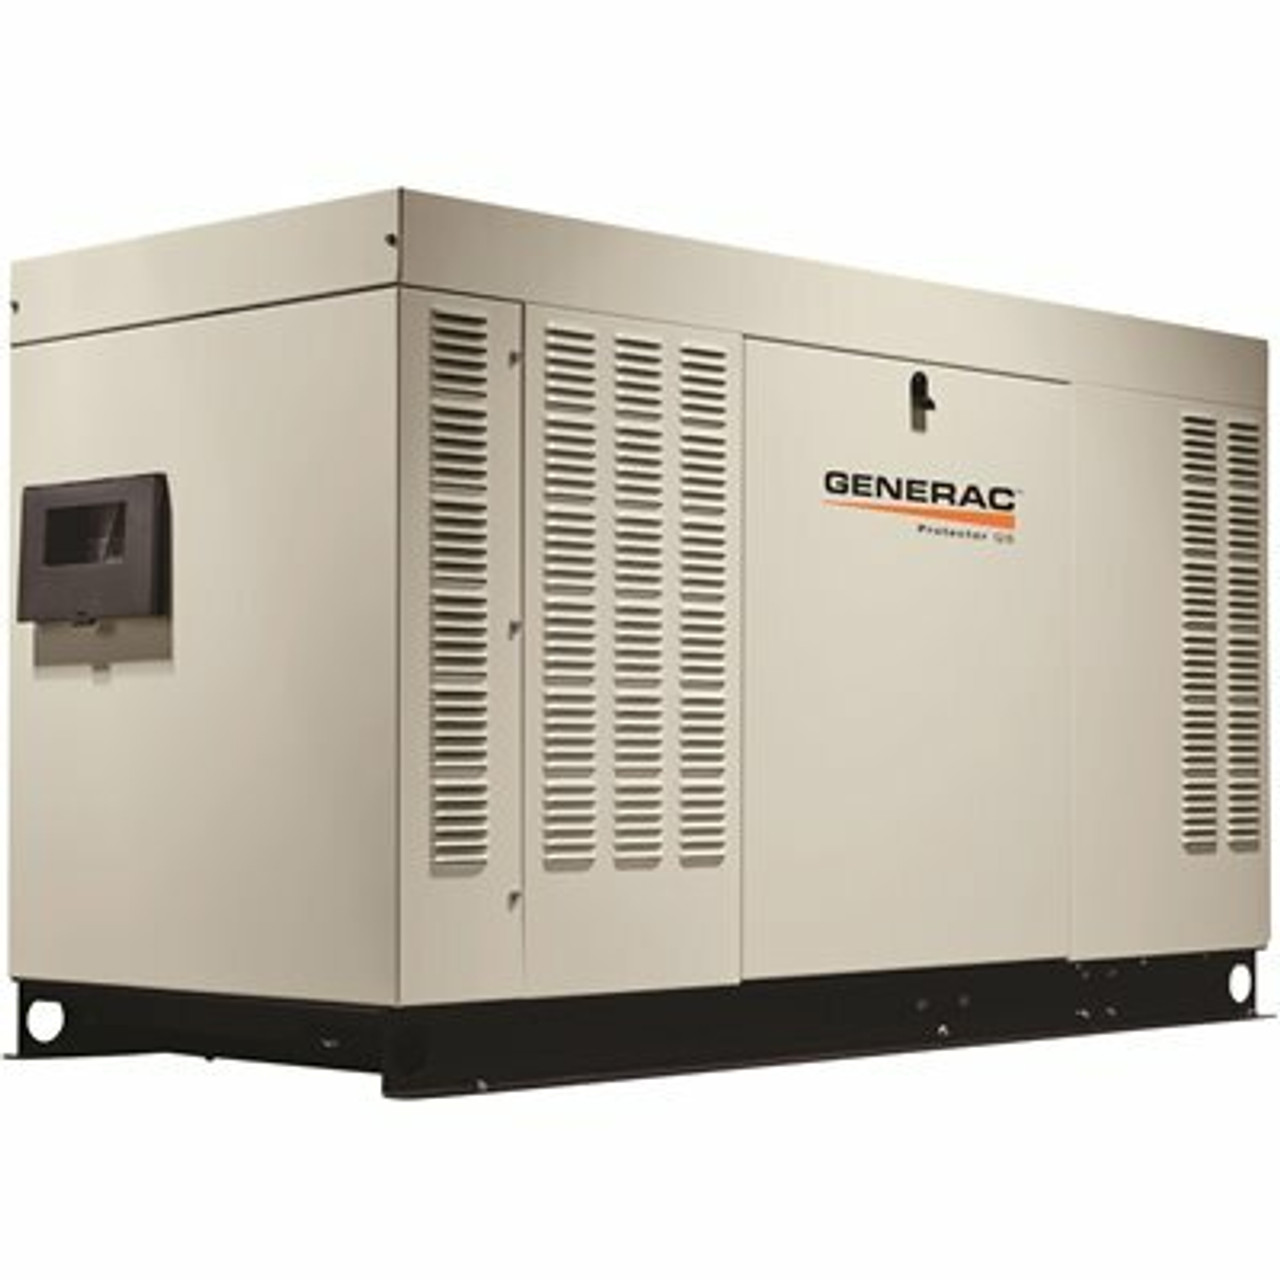 Generac 32,000-Watt 120-Volt/240-Volt Liquid Cooled Standby Generator Single Phase With Aluminum Enclosure